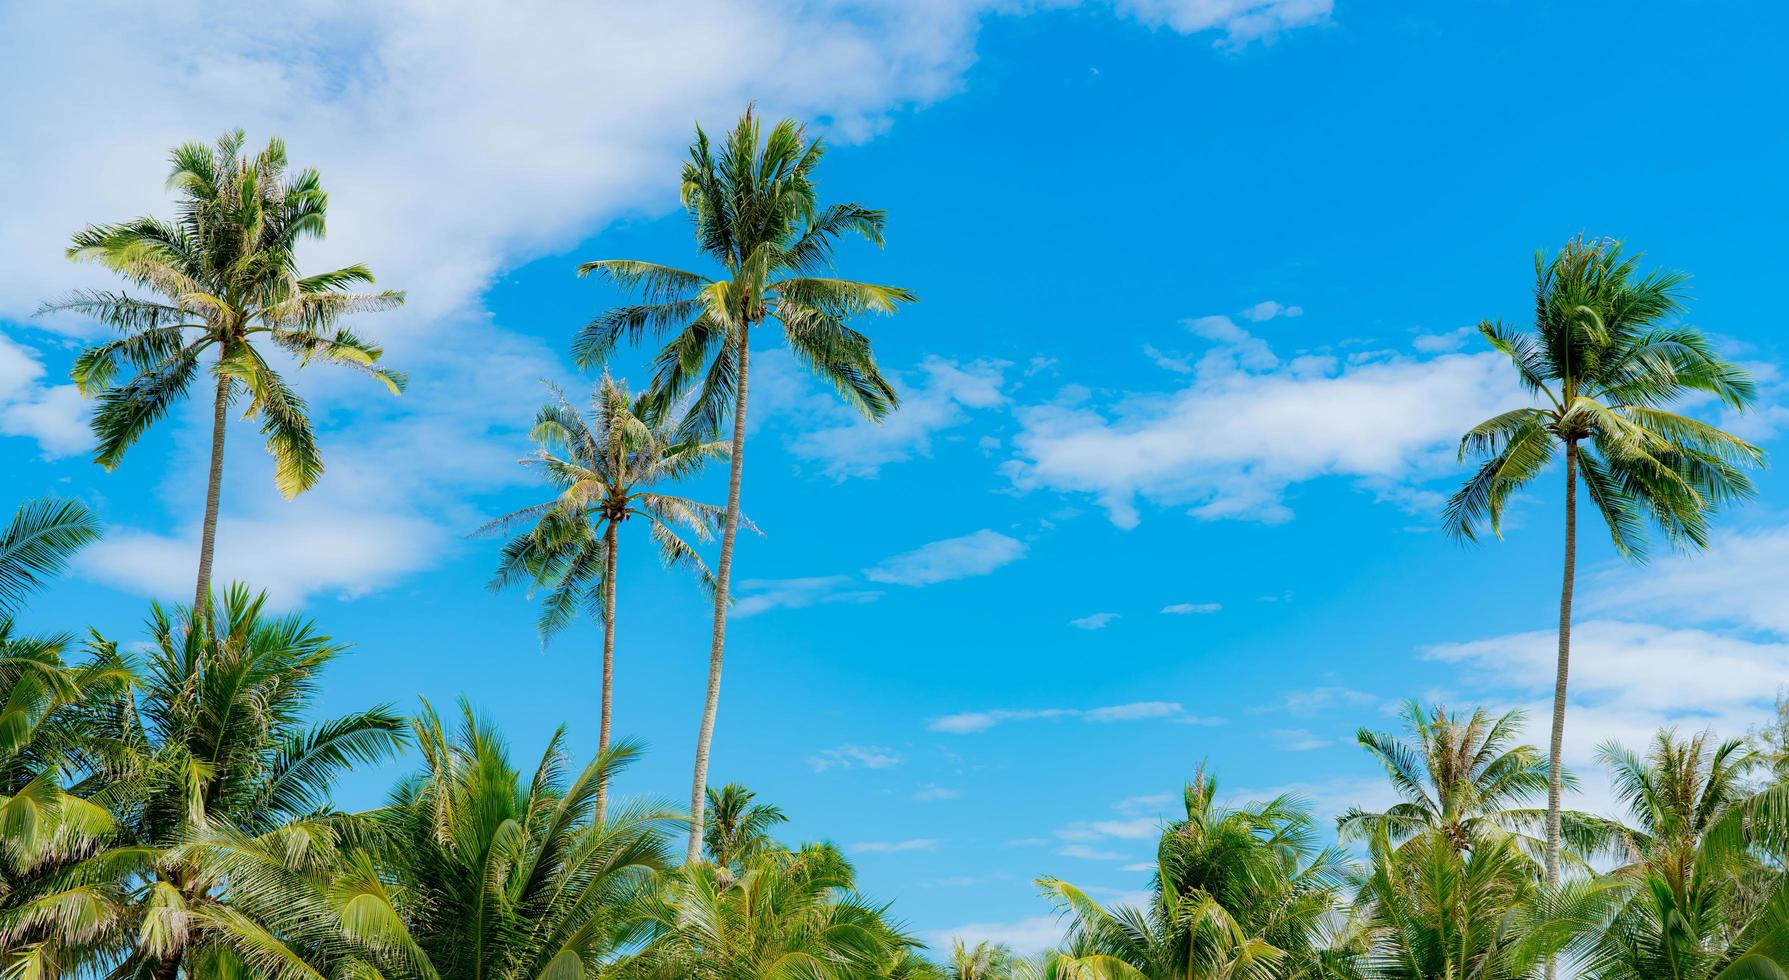 kokospalm tegen blauwe lucht en witte wolken. zomer en paradijs strand concept. tropische kokospalm. zomervakantie op het eiland. kokospalm in resort aan de tropische zee op zonnige dag. foto